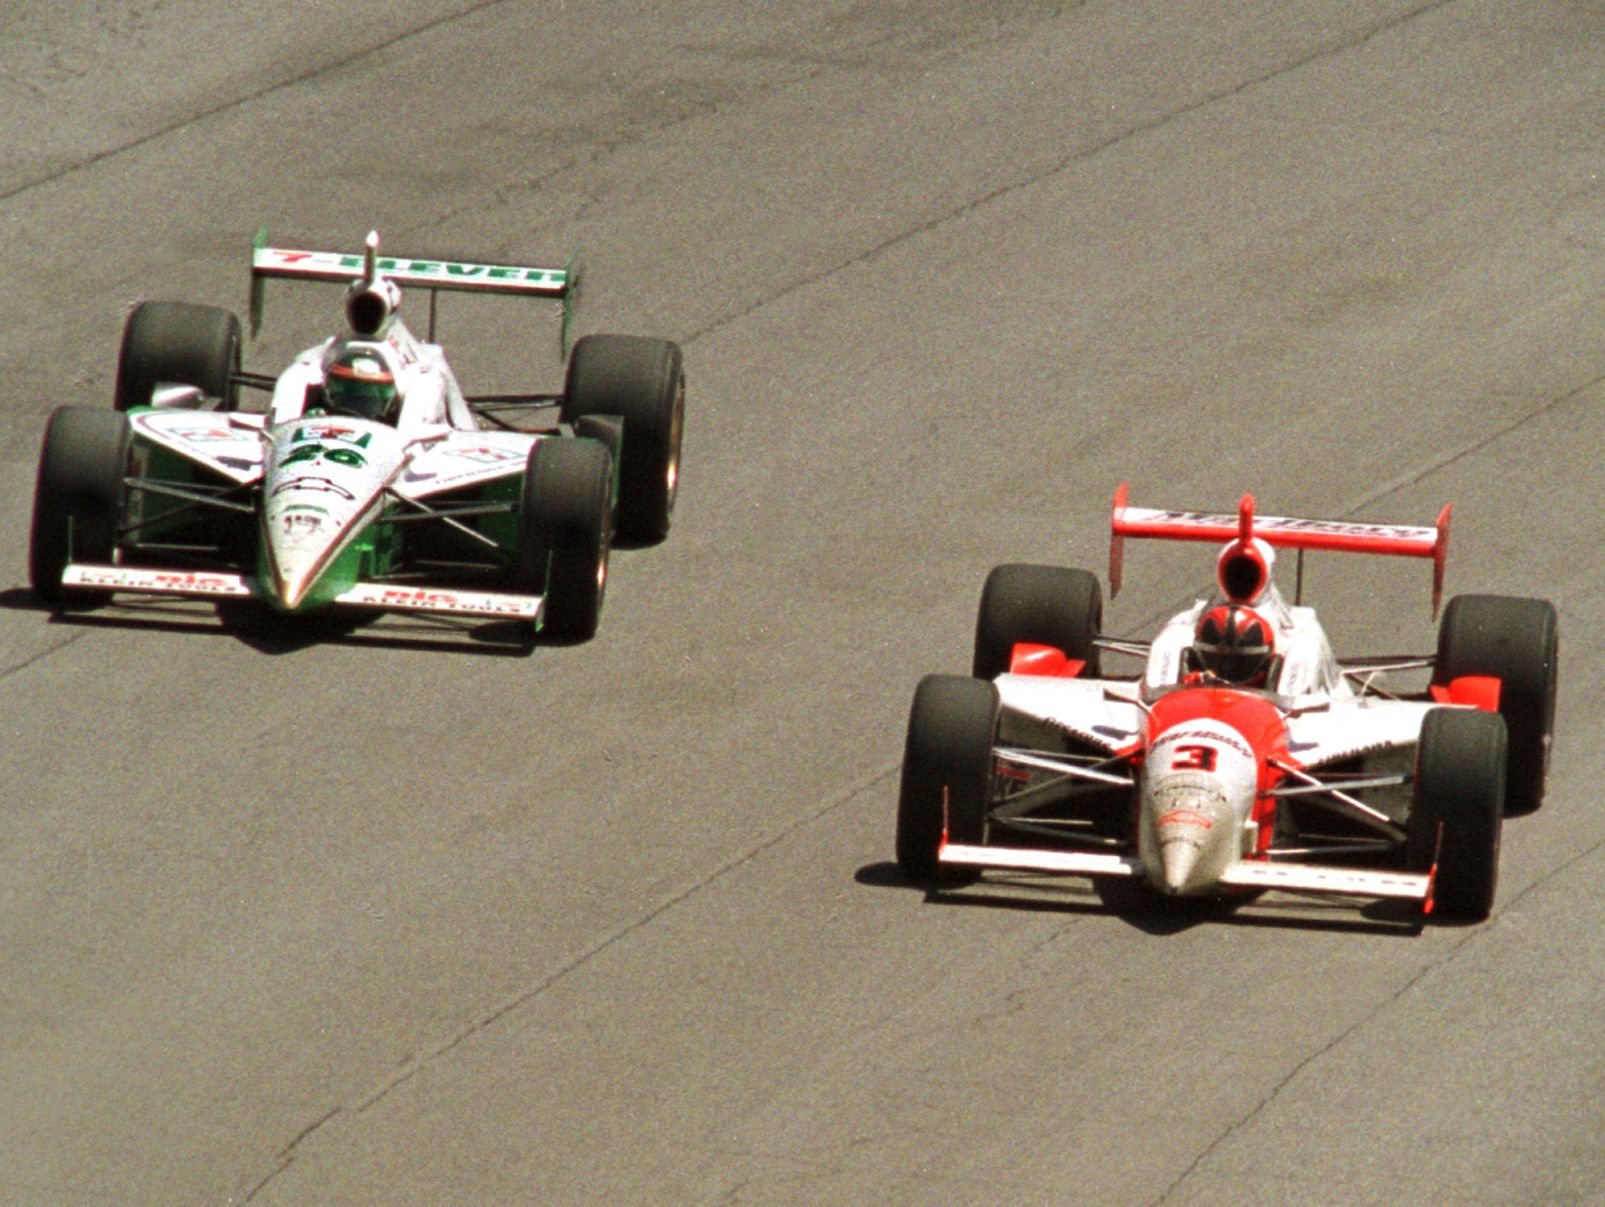 IL PASS CONTESTATO...(da sinistra a destra) Paul Tracy, nell'auto numero 26, passa (all'esterno) il numero 3, Helio Castroneves...Alla fine della gara.